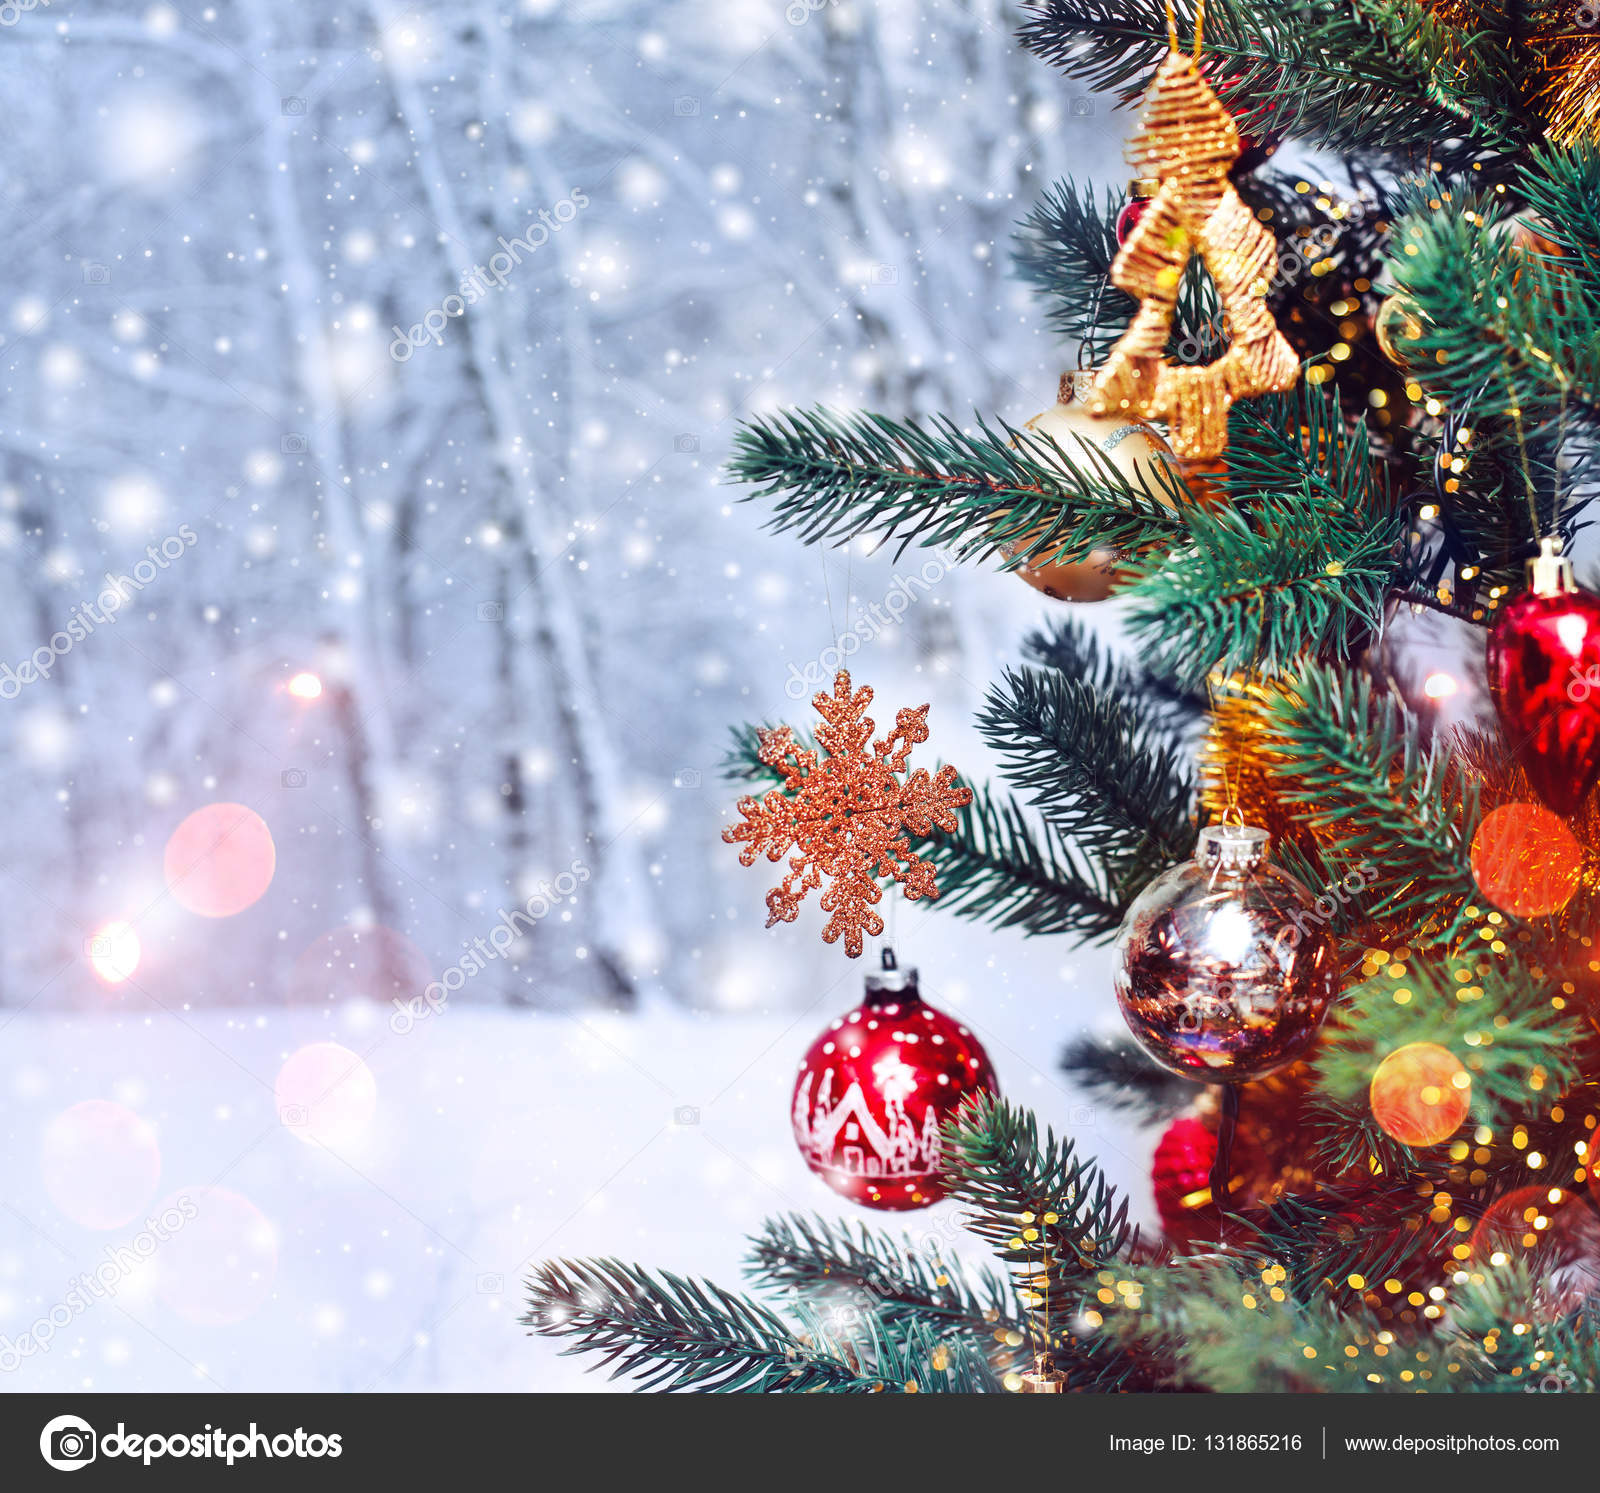 Hình nền cây thông Giáng Sinh và trang trí Noel kèm tuyết sẽ làm bạn cảm thấy như đang lạc vào một không gian thần tiên đầy mơ mộng và ấm áp. Nhiều họa tiết và trang trí Noel được phối hợp với cây thông và tuyết, một sự kết hợp hoàn hảo giữa sinh động và trí tuệ.